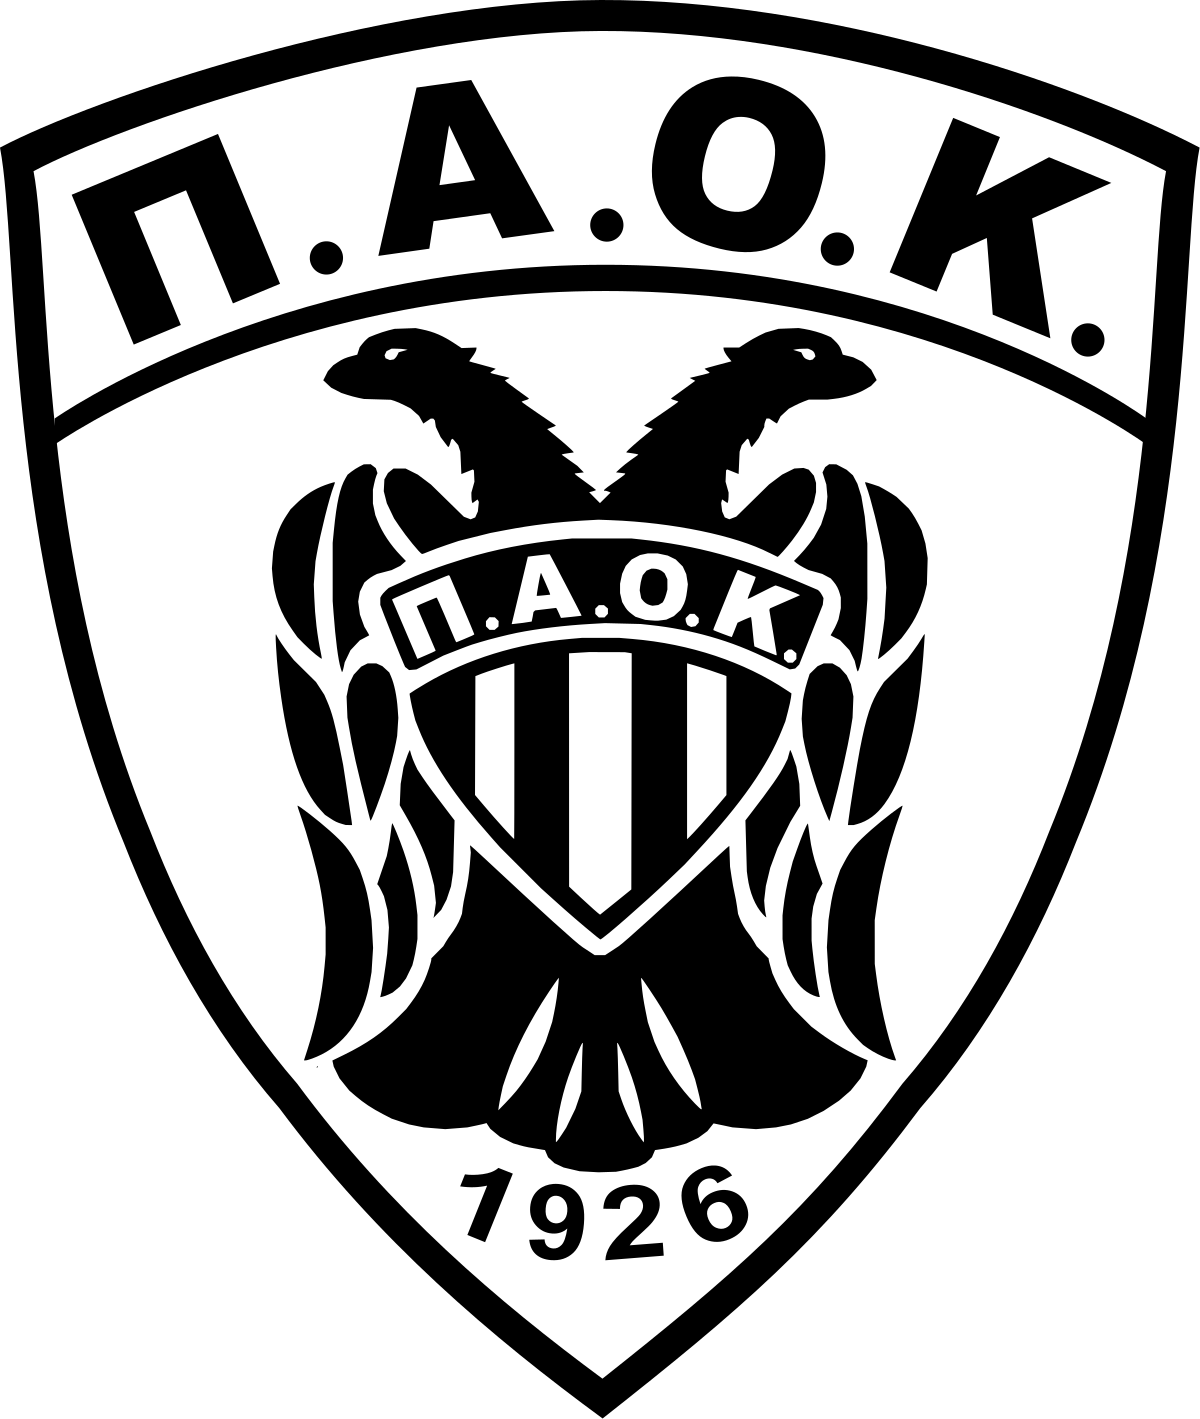 Π.Α.Ο.Κ. Α.Σ. 2 - team logo